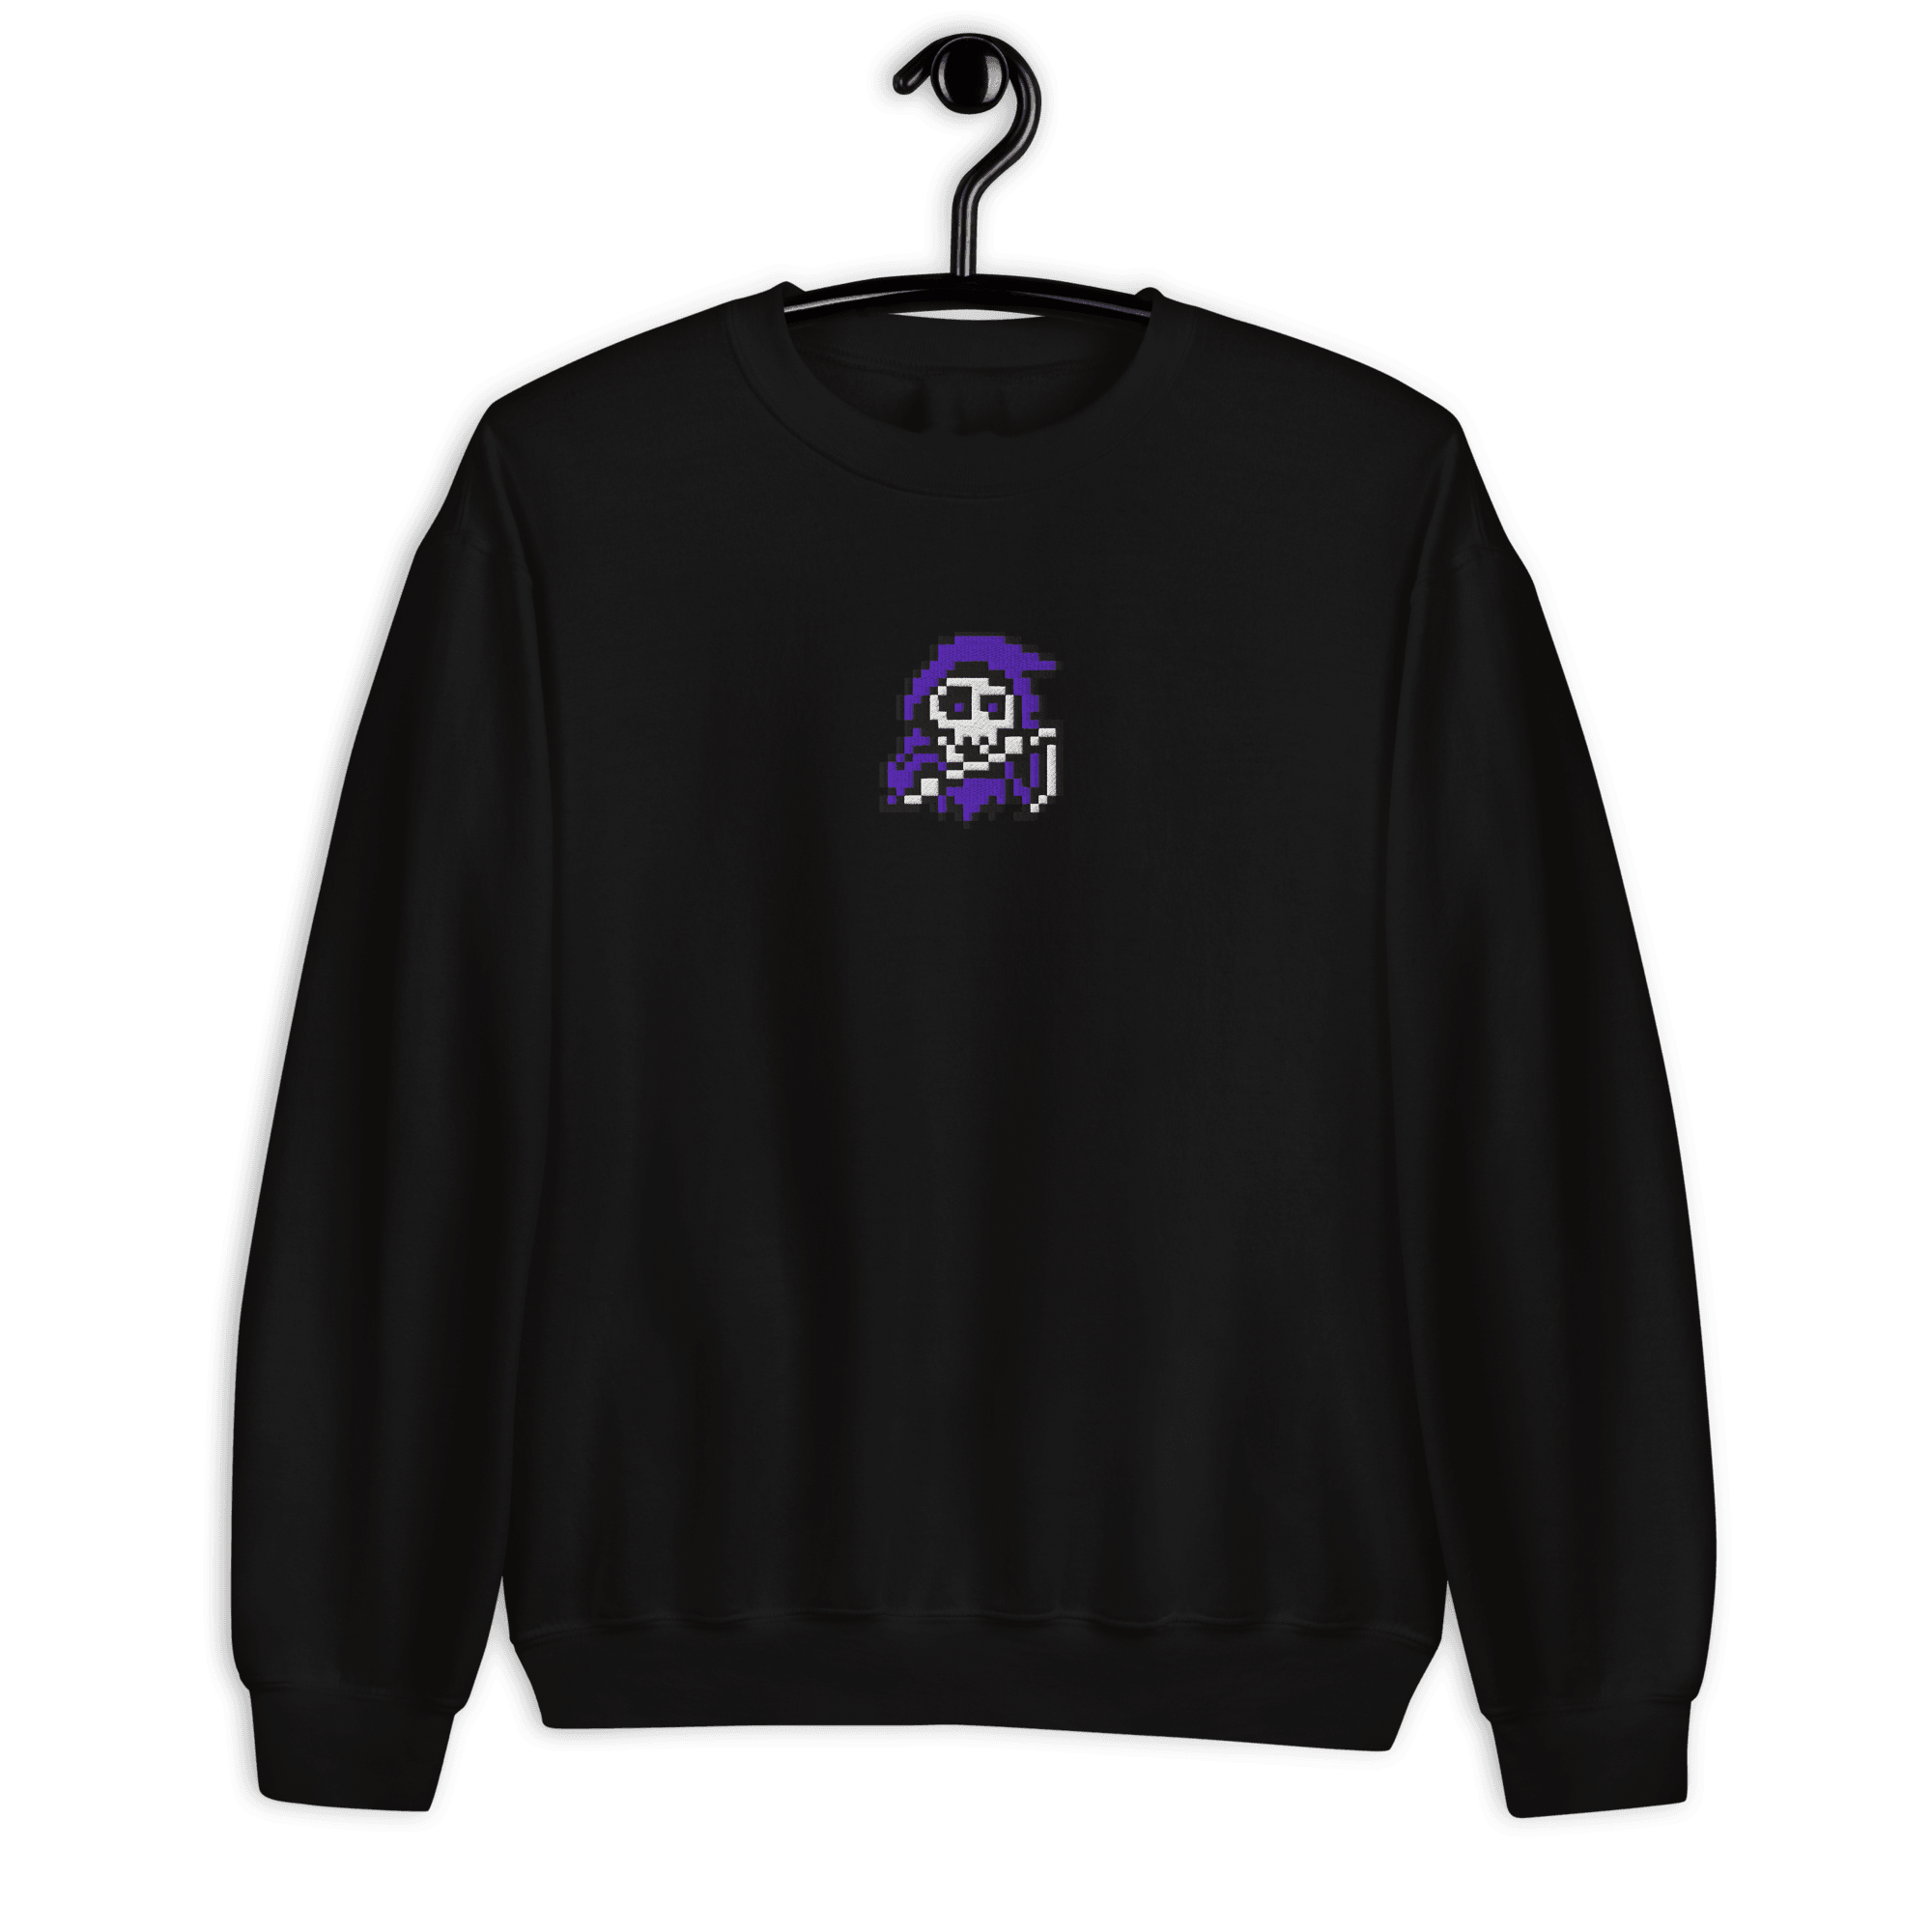 Grotesk 4® Embroidered Sweatshirt - Kikillo Club